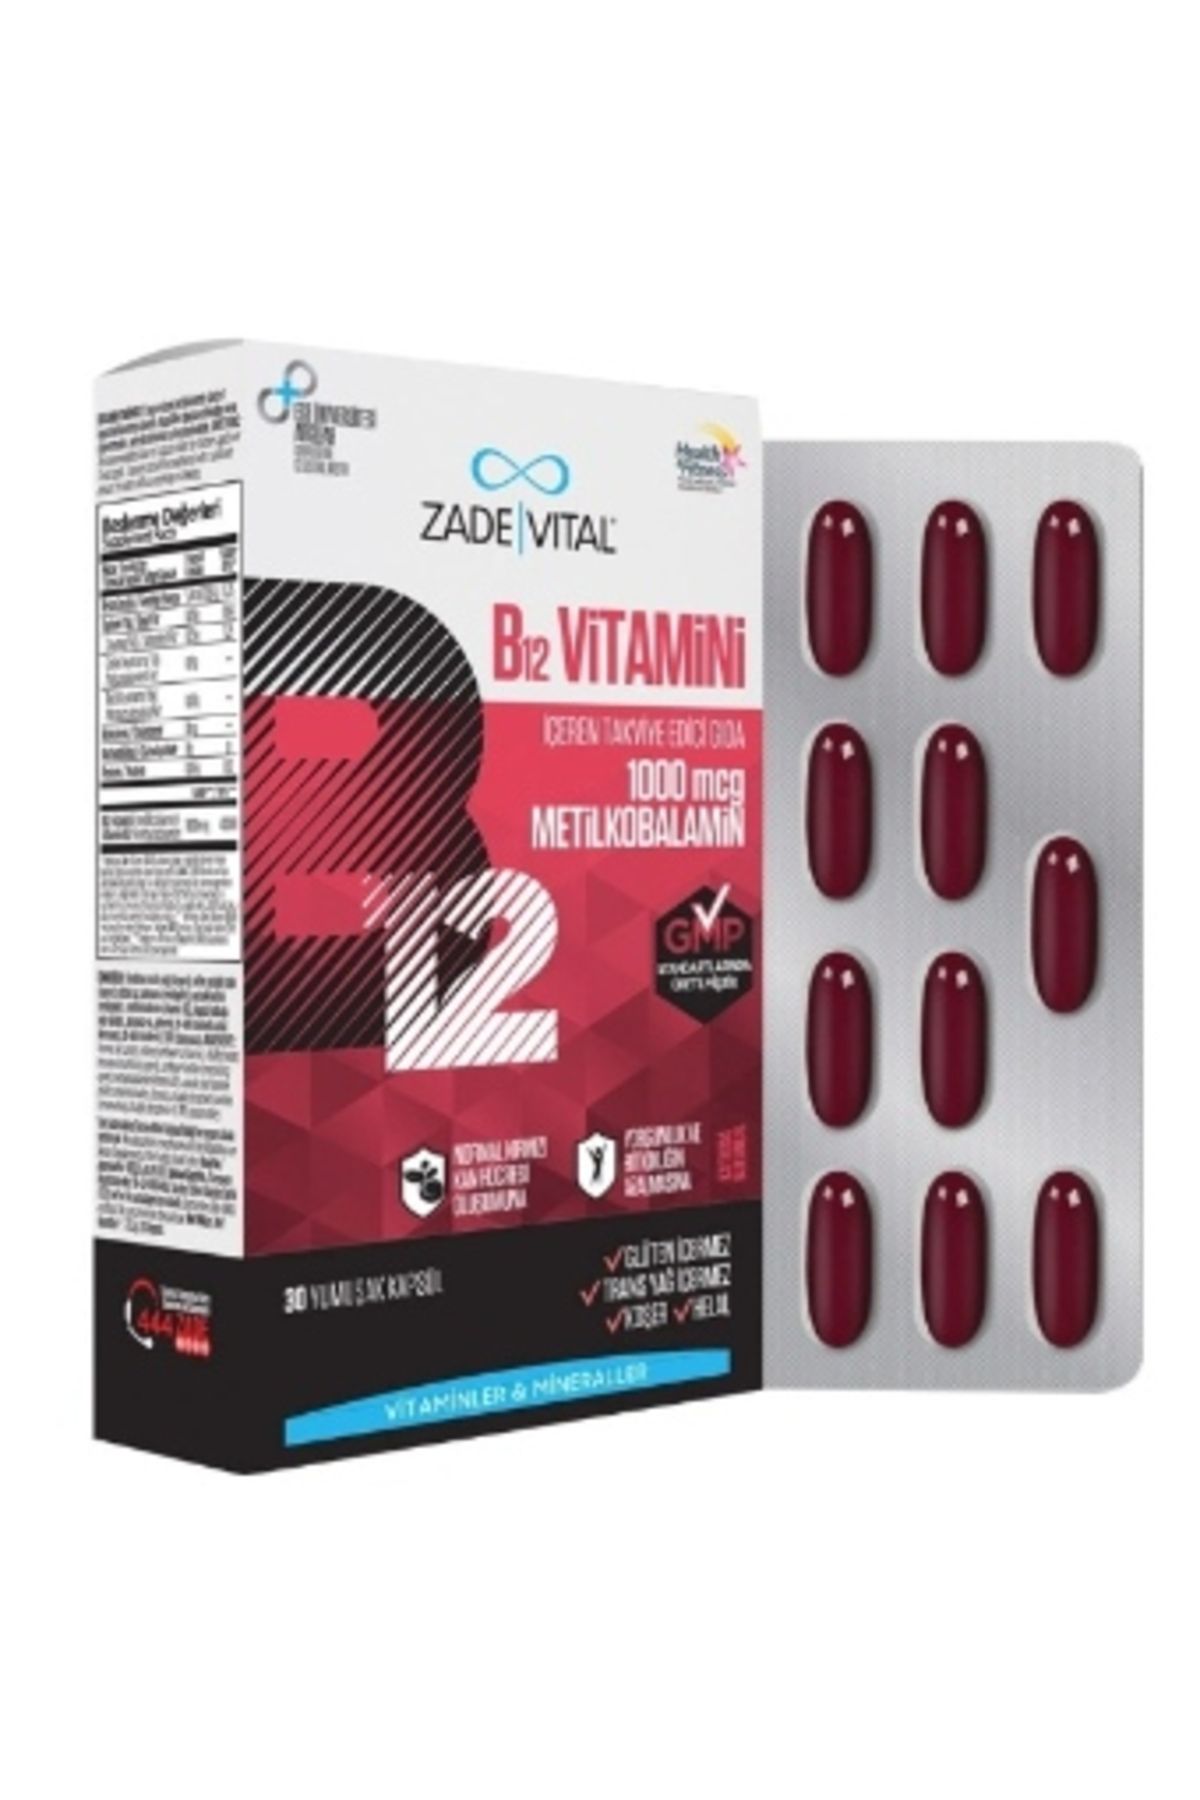 Zade Vital B12 Vitamini 30 Kapsül ( 1 ADET )